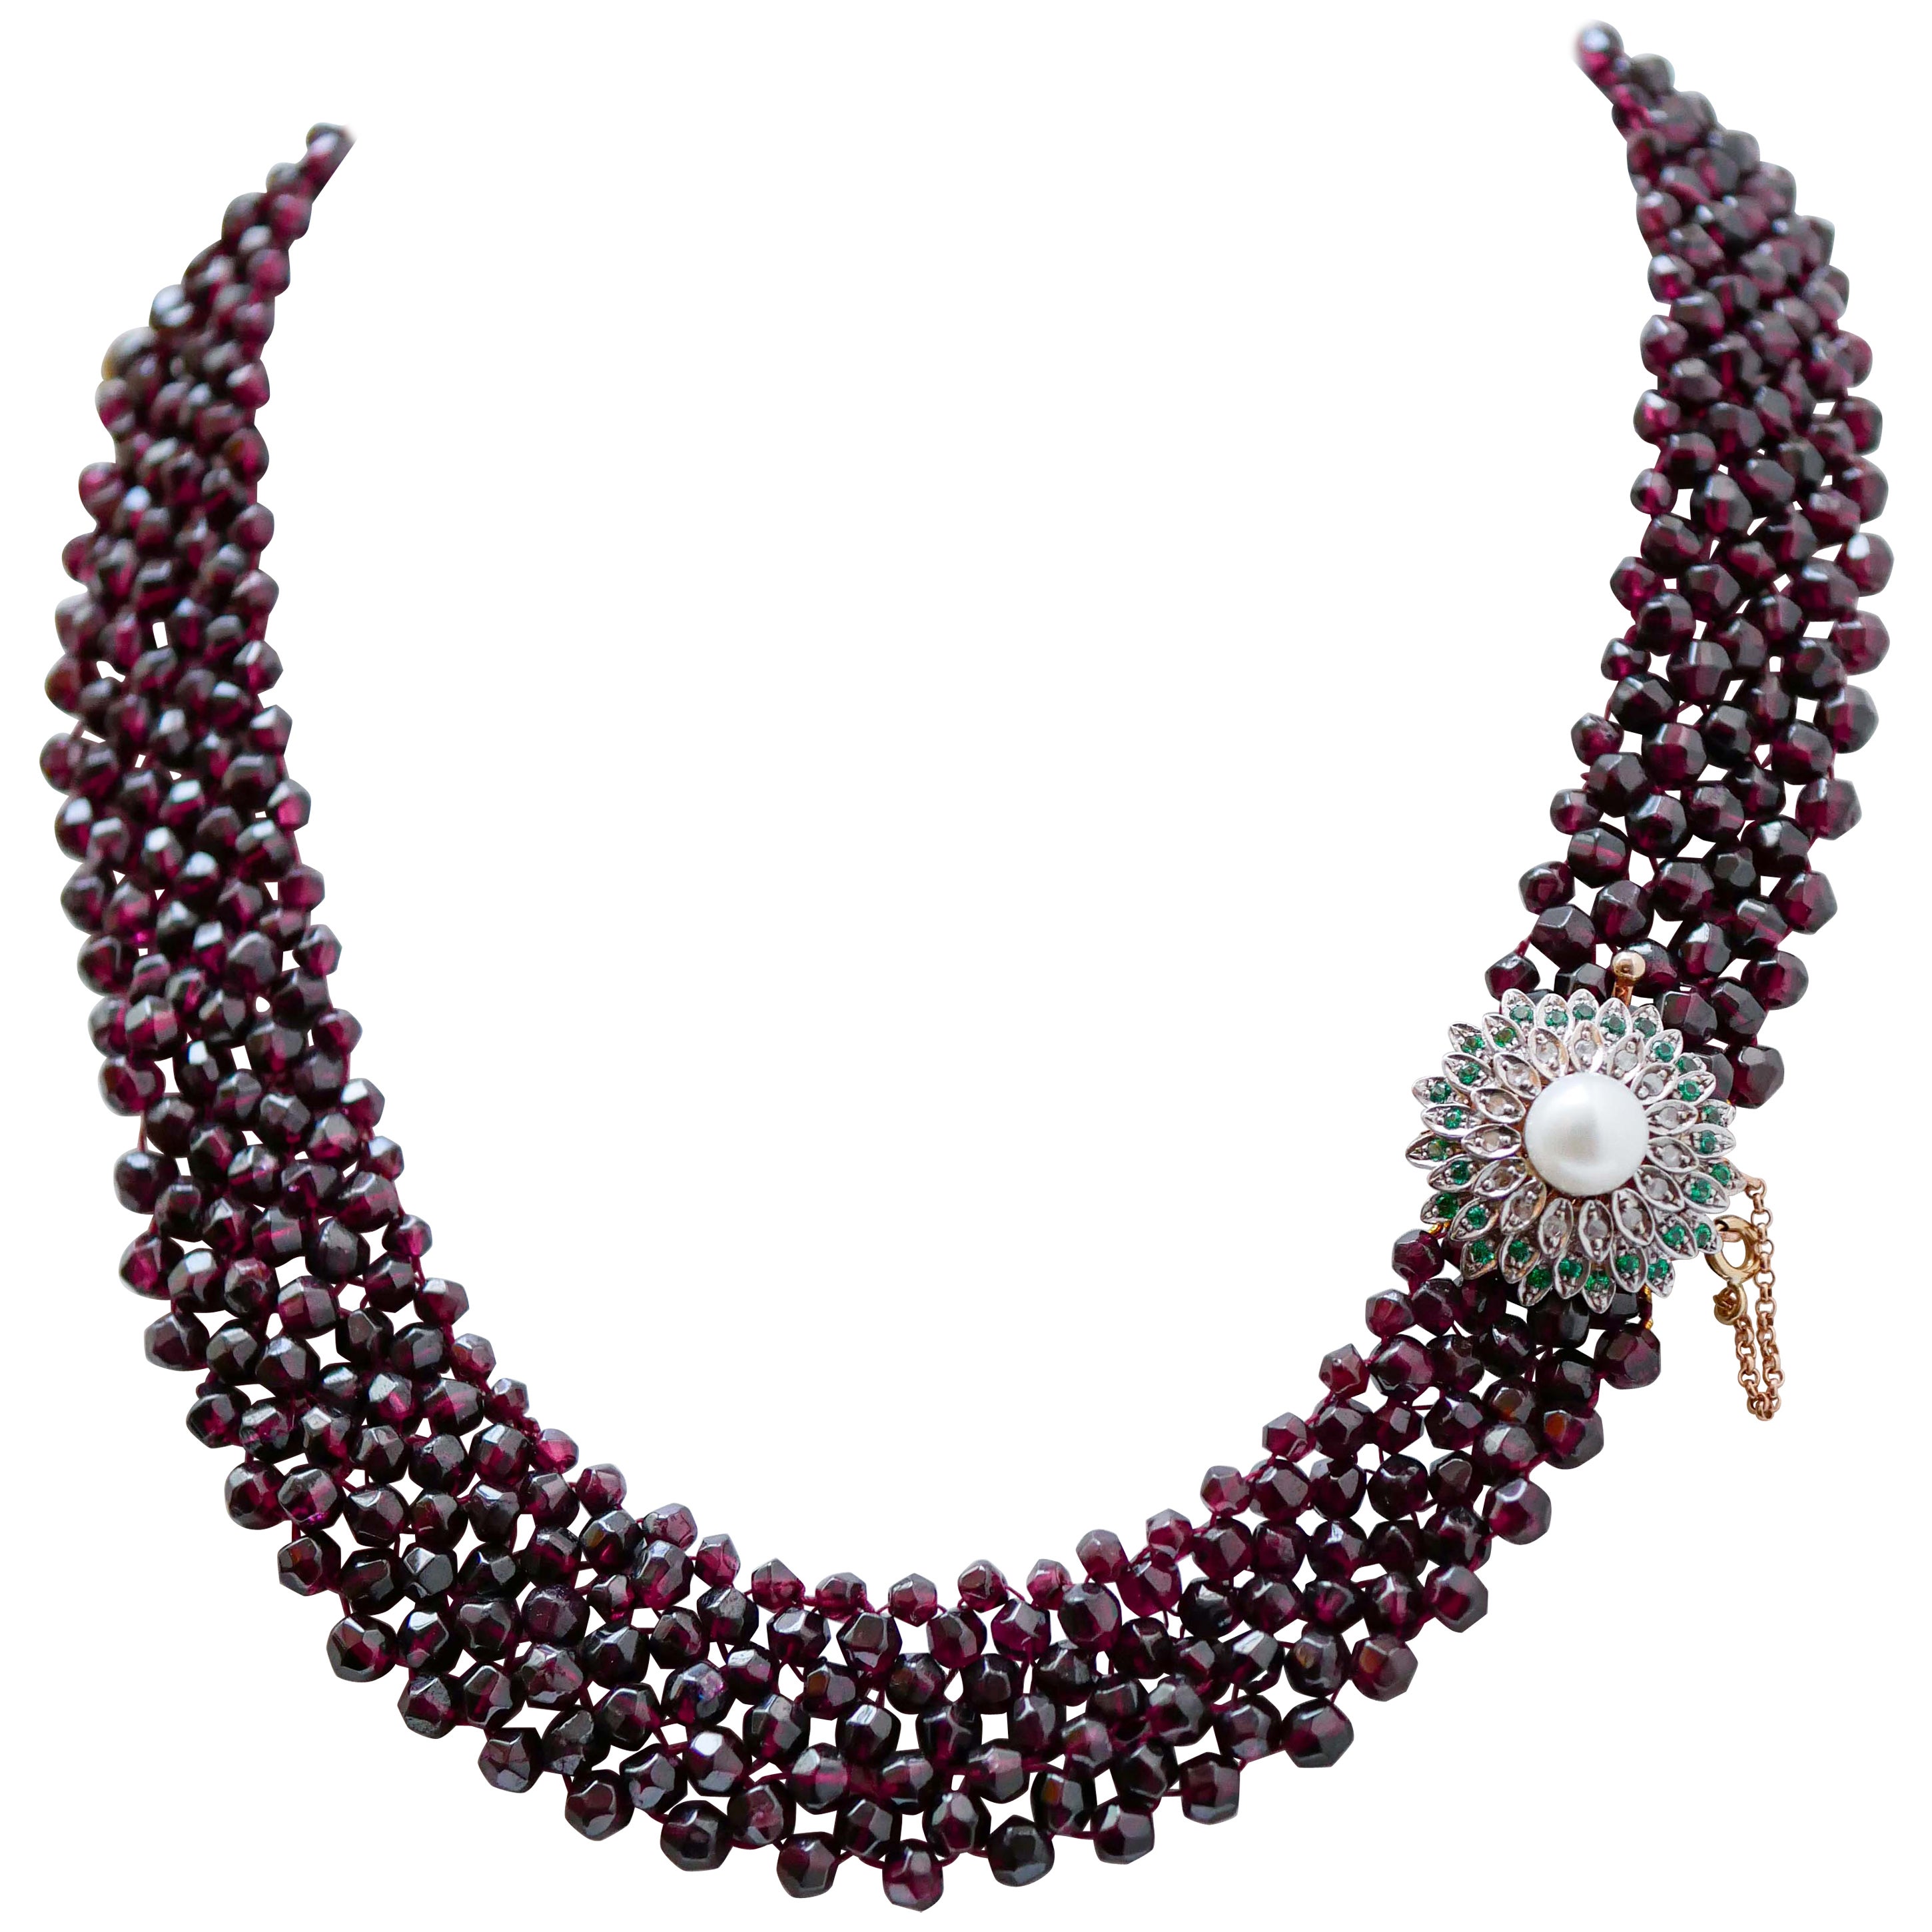 Halskette aus Roségold und Silber mit Granaten, hydrothermischem Spinell, Diamanten, Perlen, Rosengold und Silber.